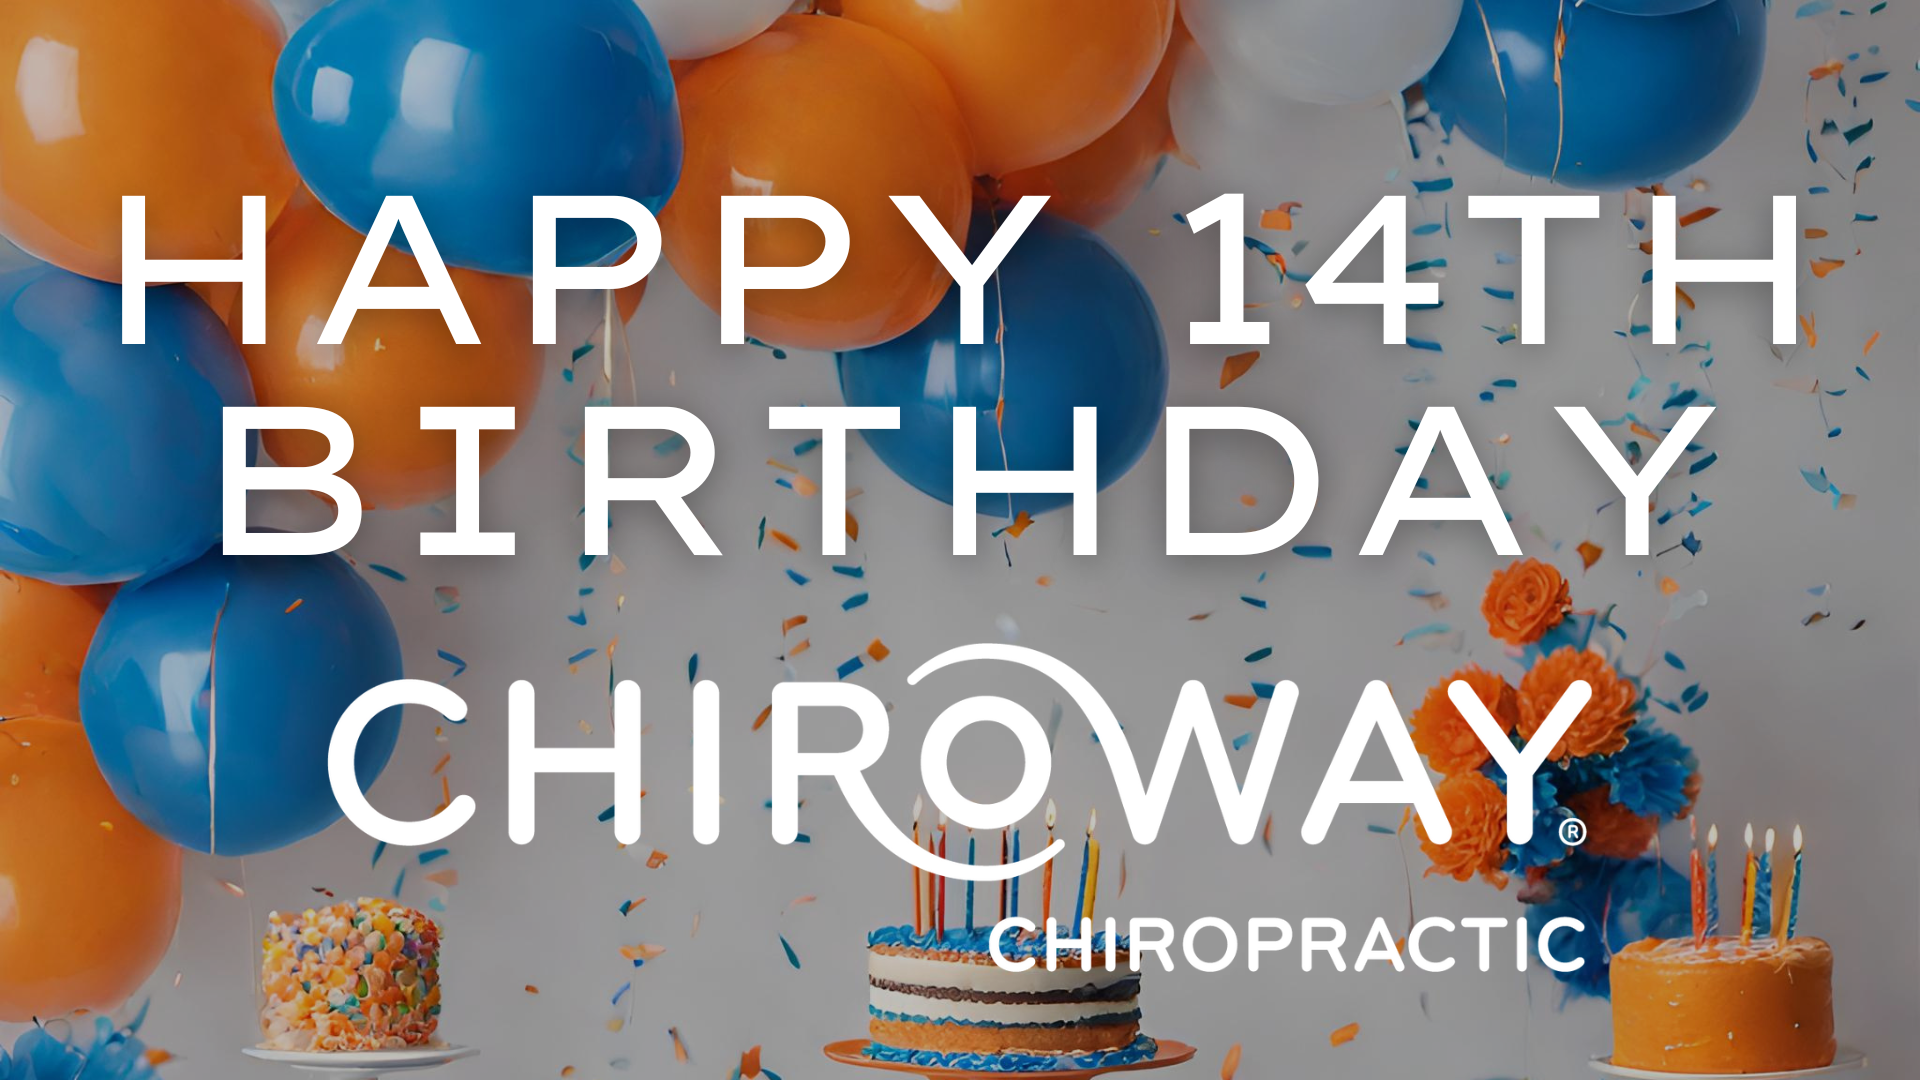 ChiroWay Chiropractics 14th Birthday